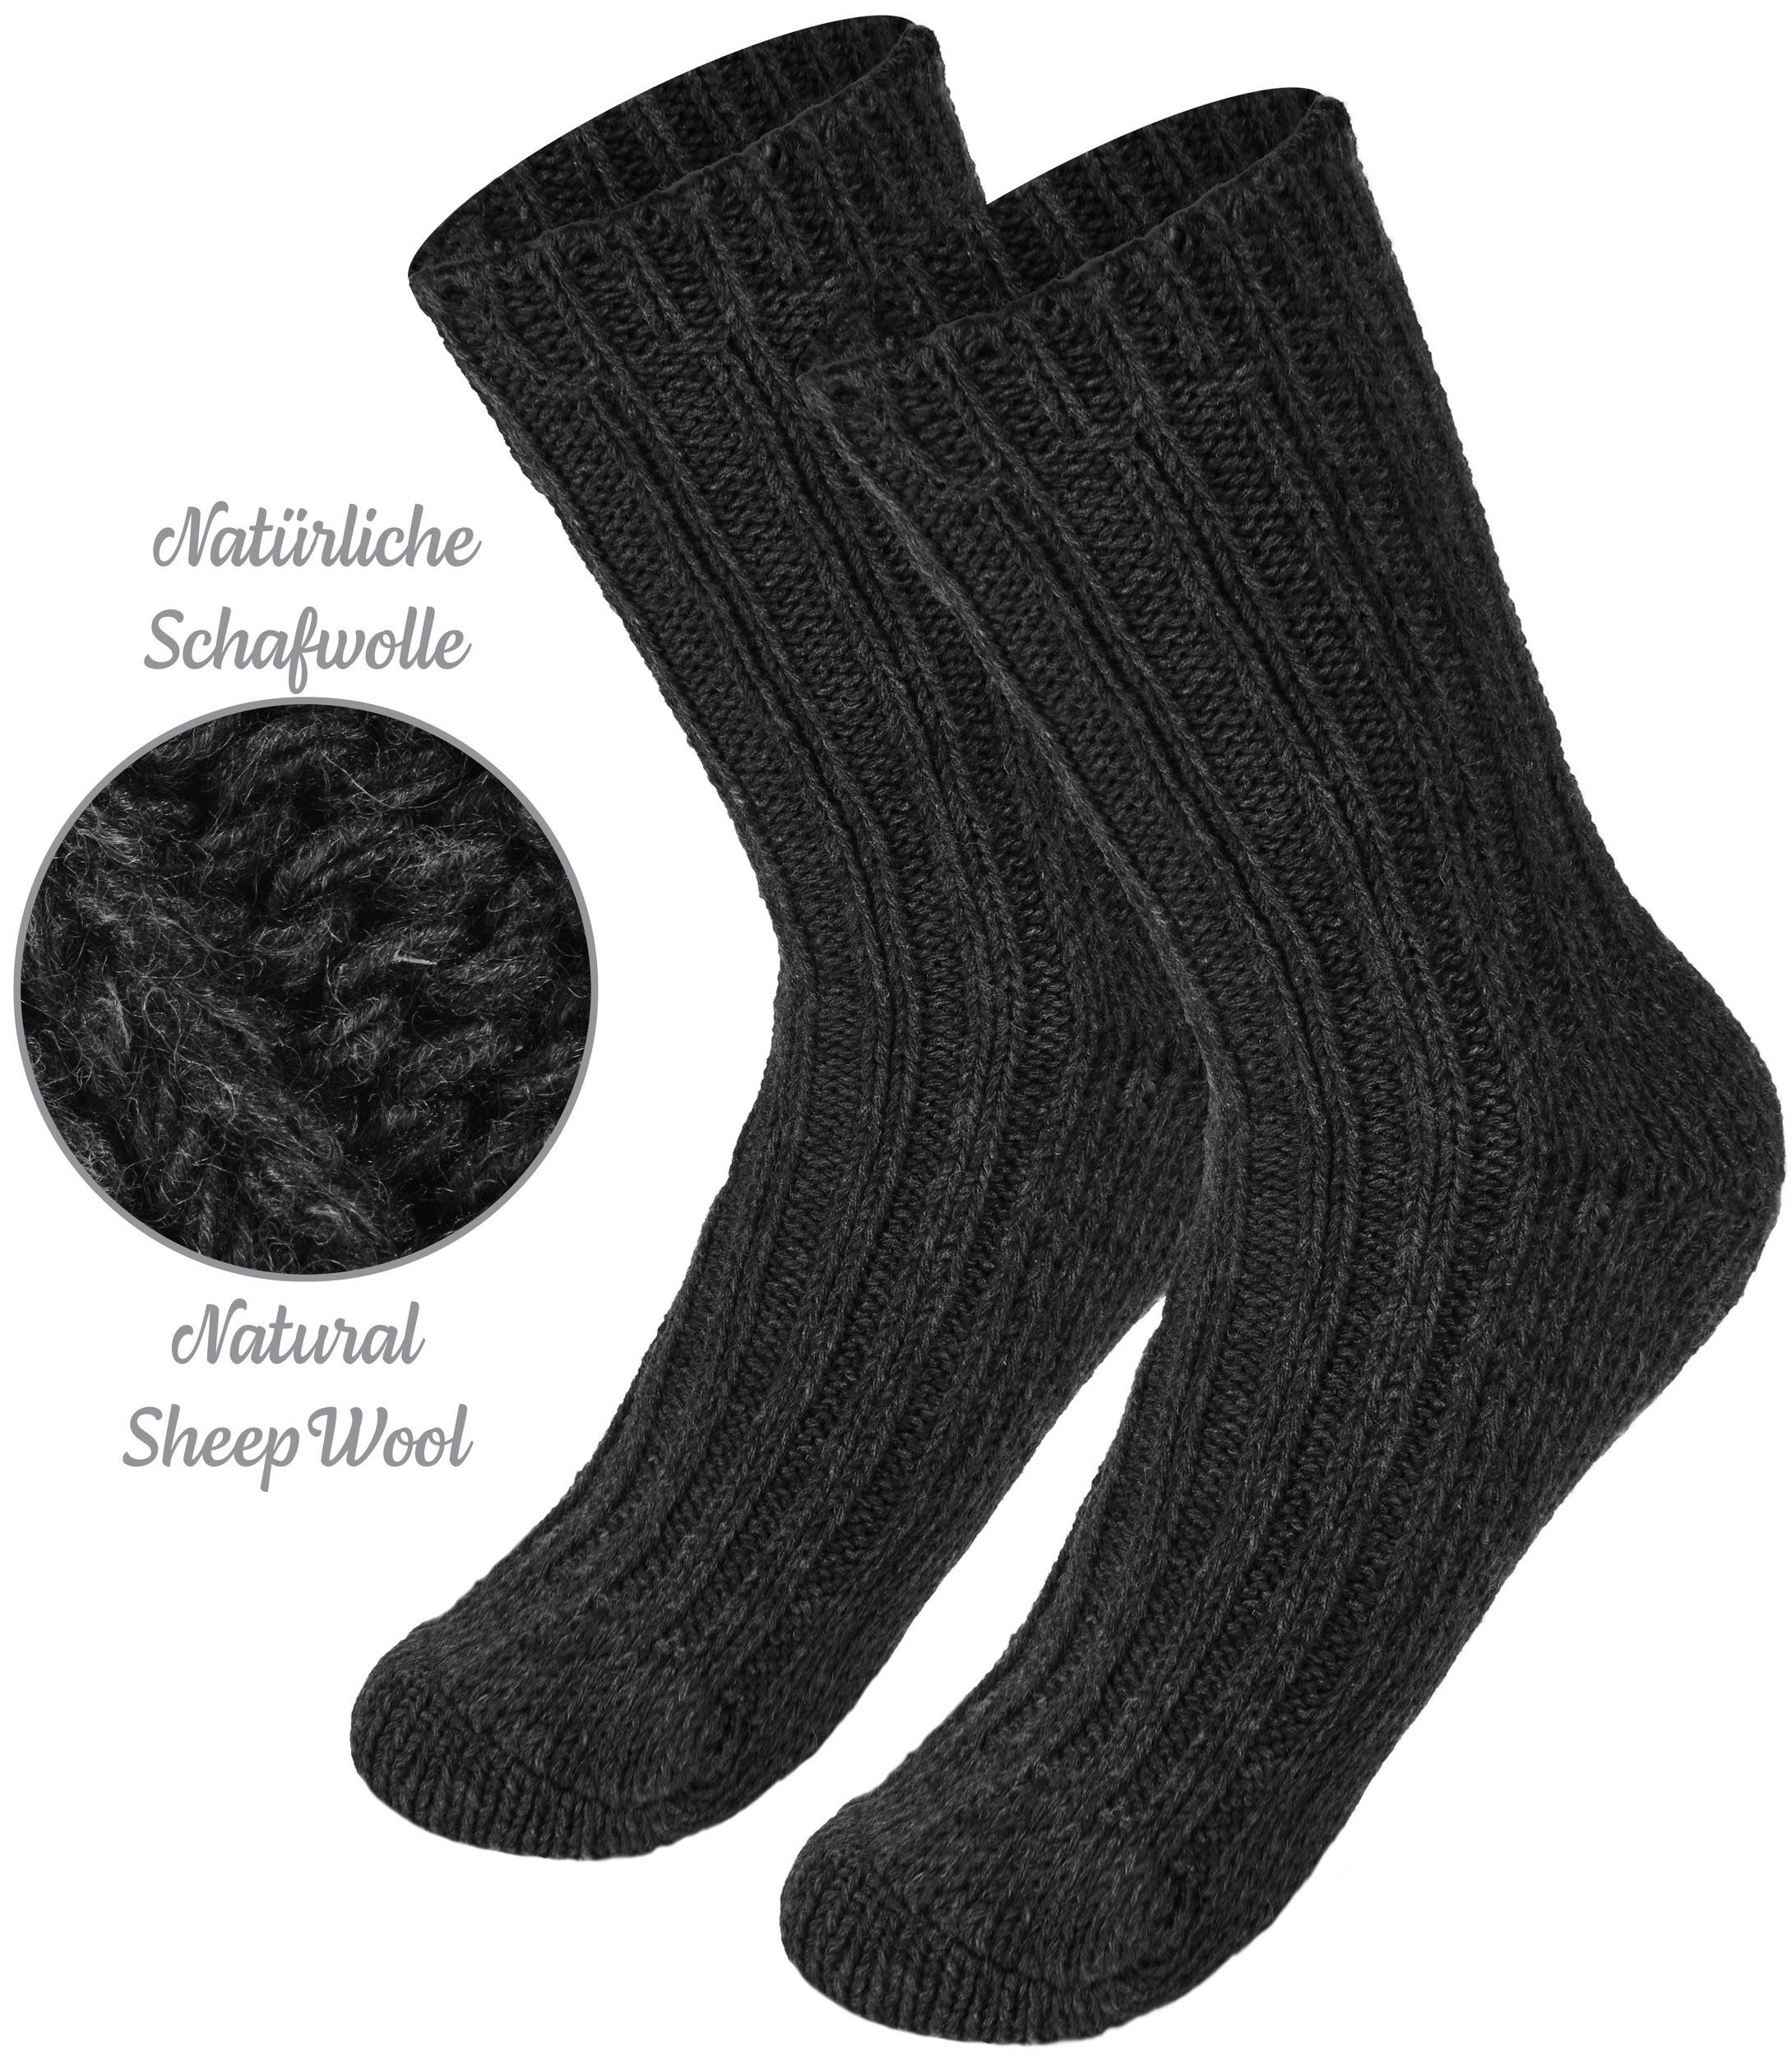 - und Mädchen Winter Schwarz Socken Set Jungen Flauschiges und Wollsocken Wintersocken für mit Socken Kinder Warme - Schafwolle BRUBAKER 4er-Pack) Kindersocken (4-Paar, Anthrazit